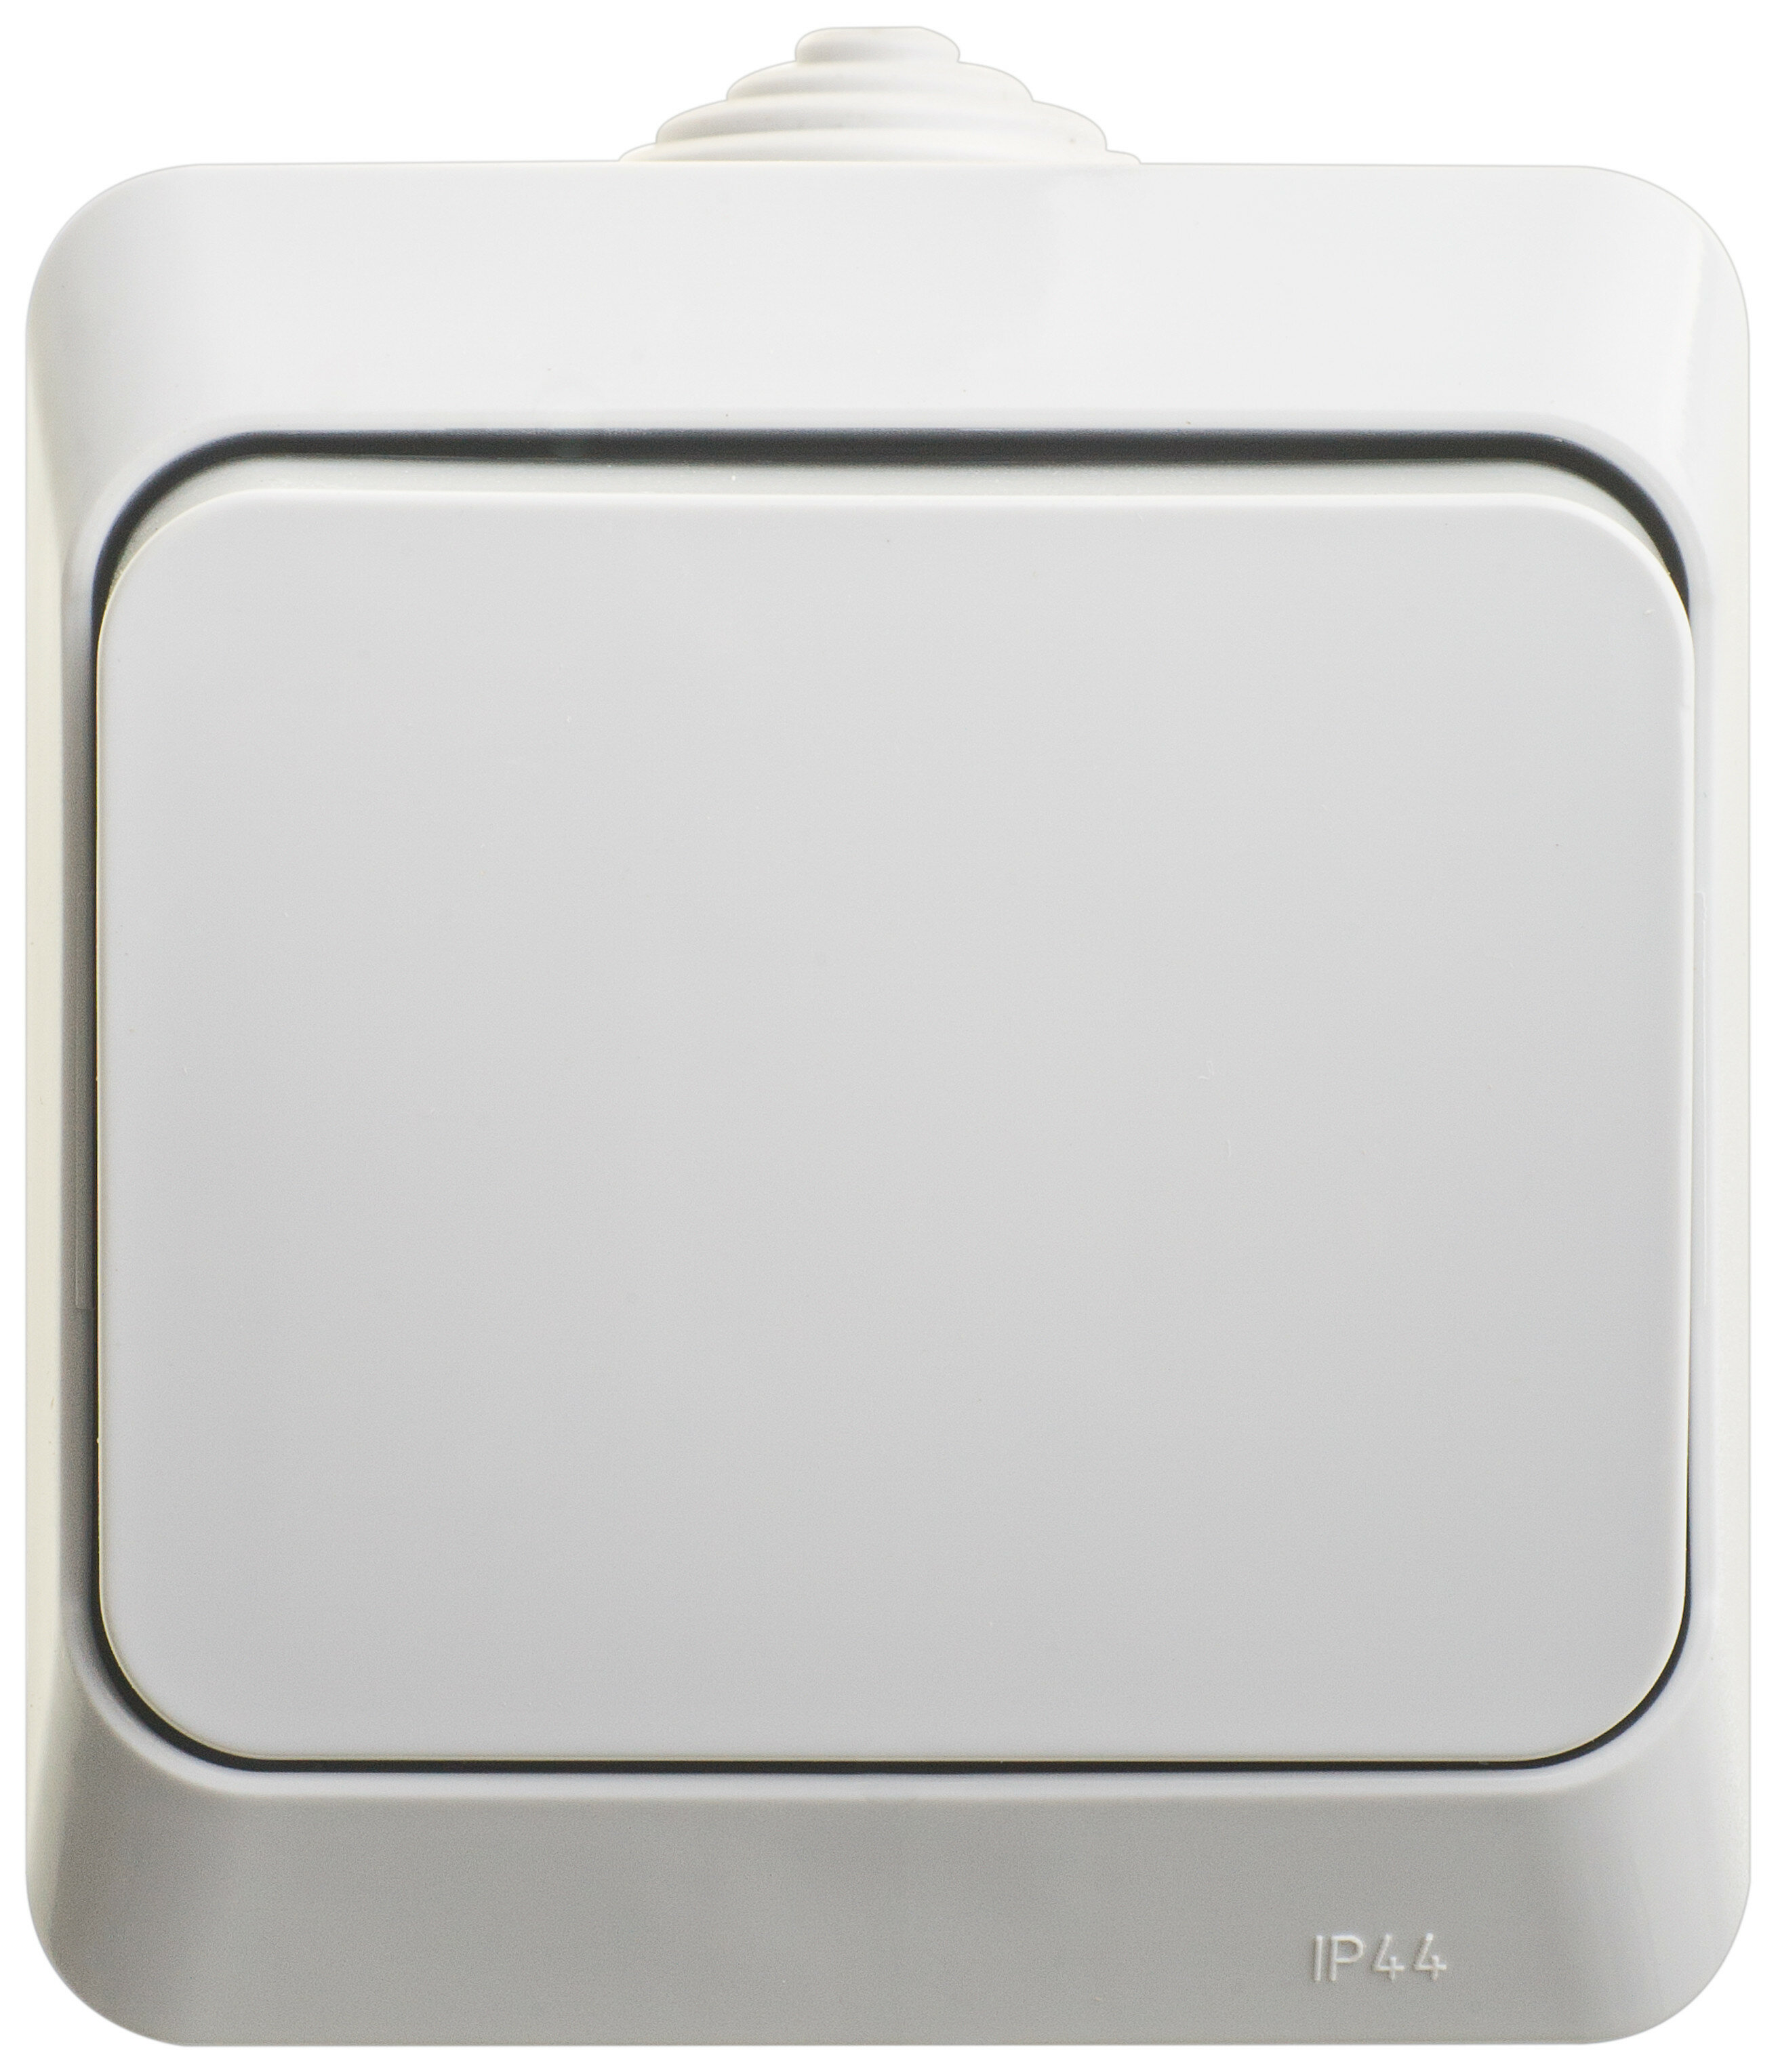 Выключатель 1 кл проходной (переключатель) Этюд серый накладной монтаж (Schneider Electric), арт. BA10-046C